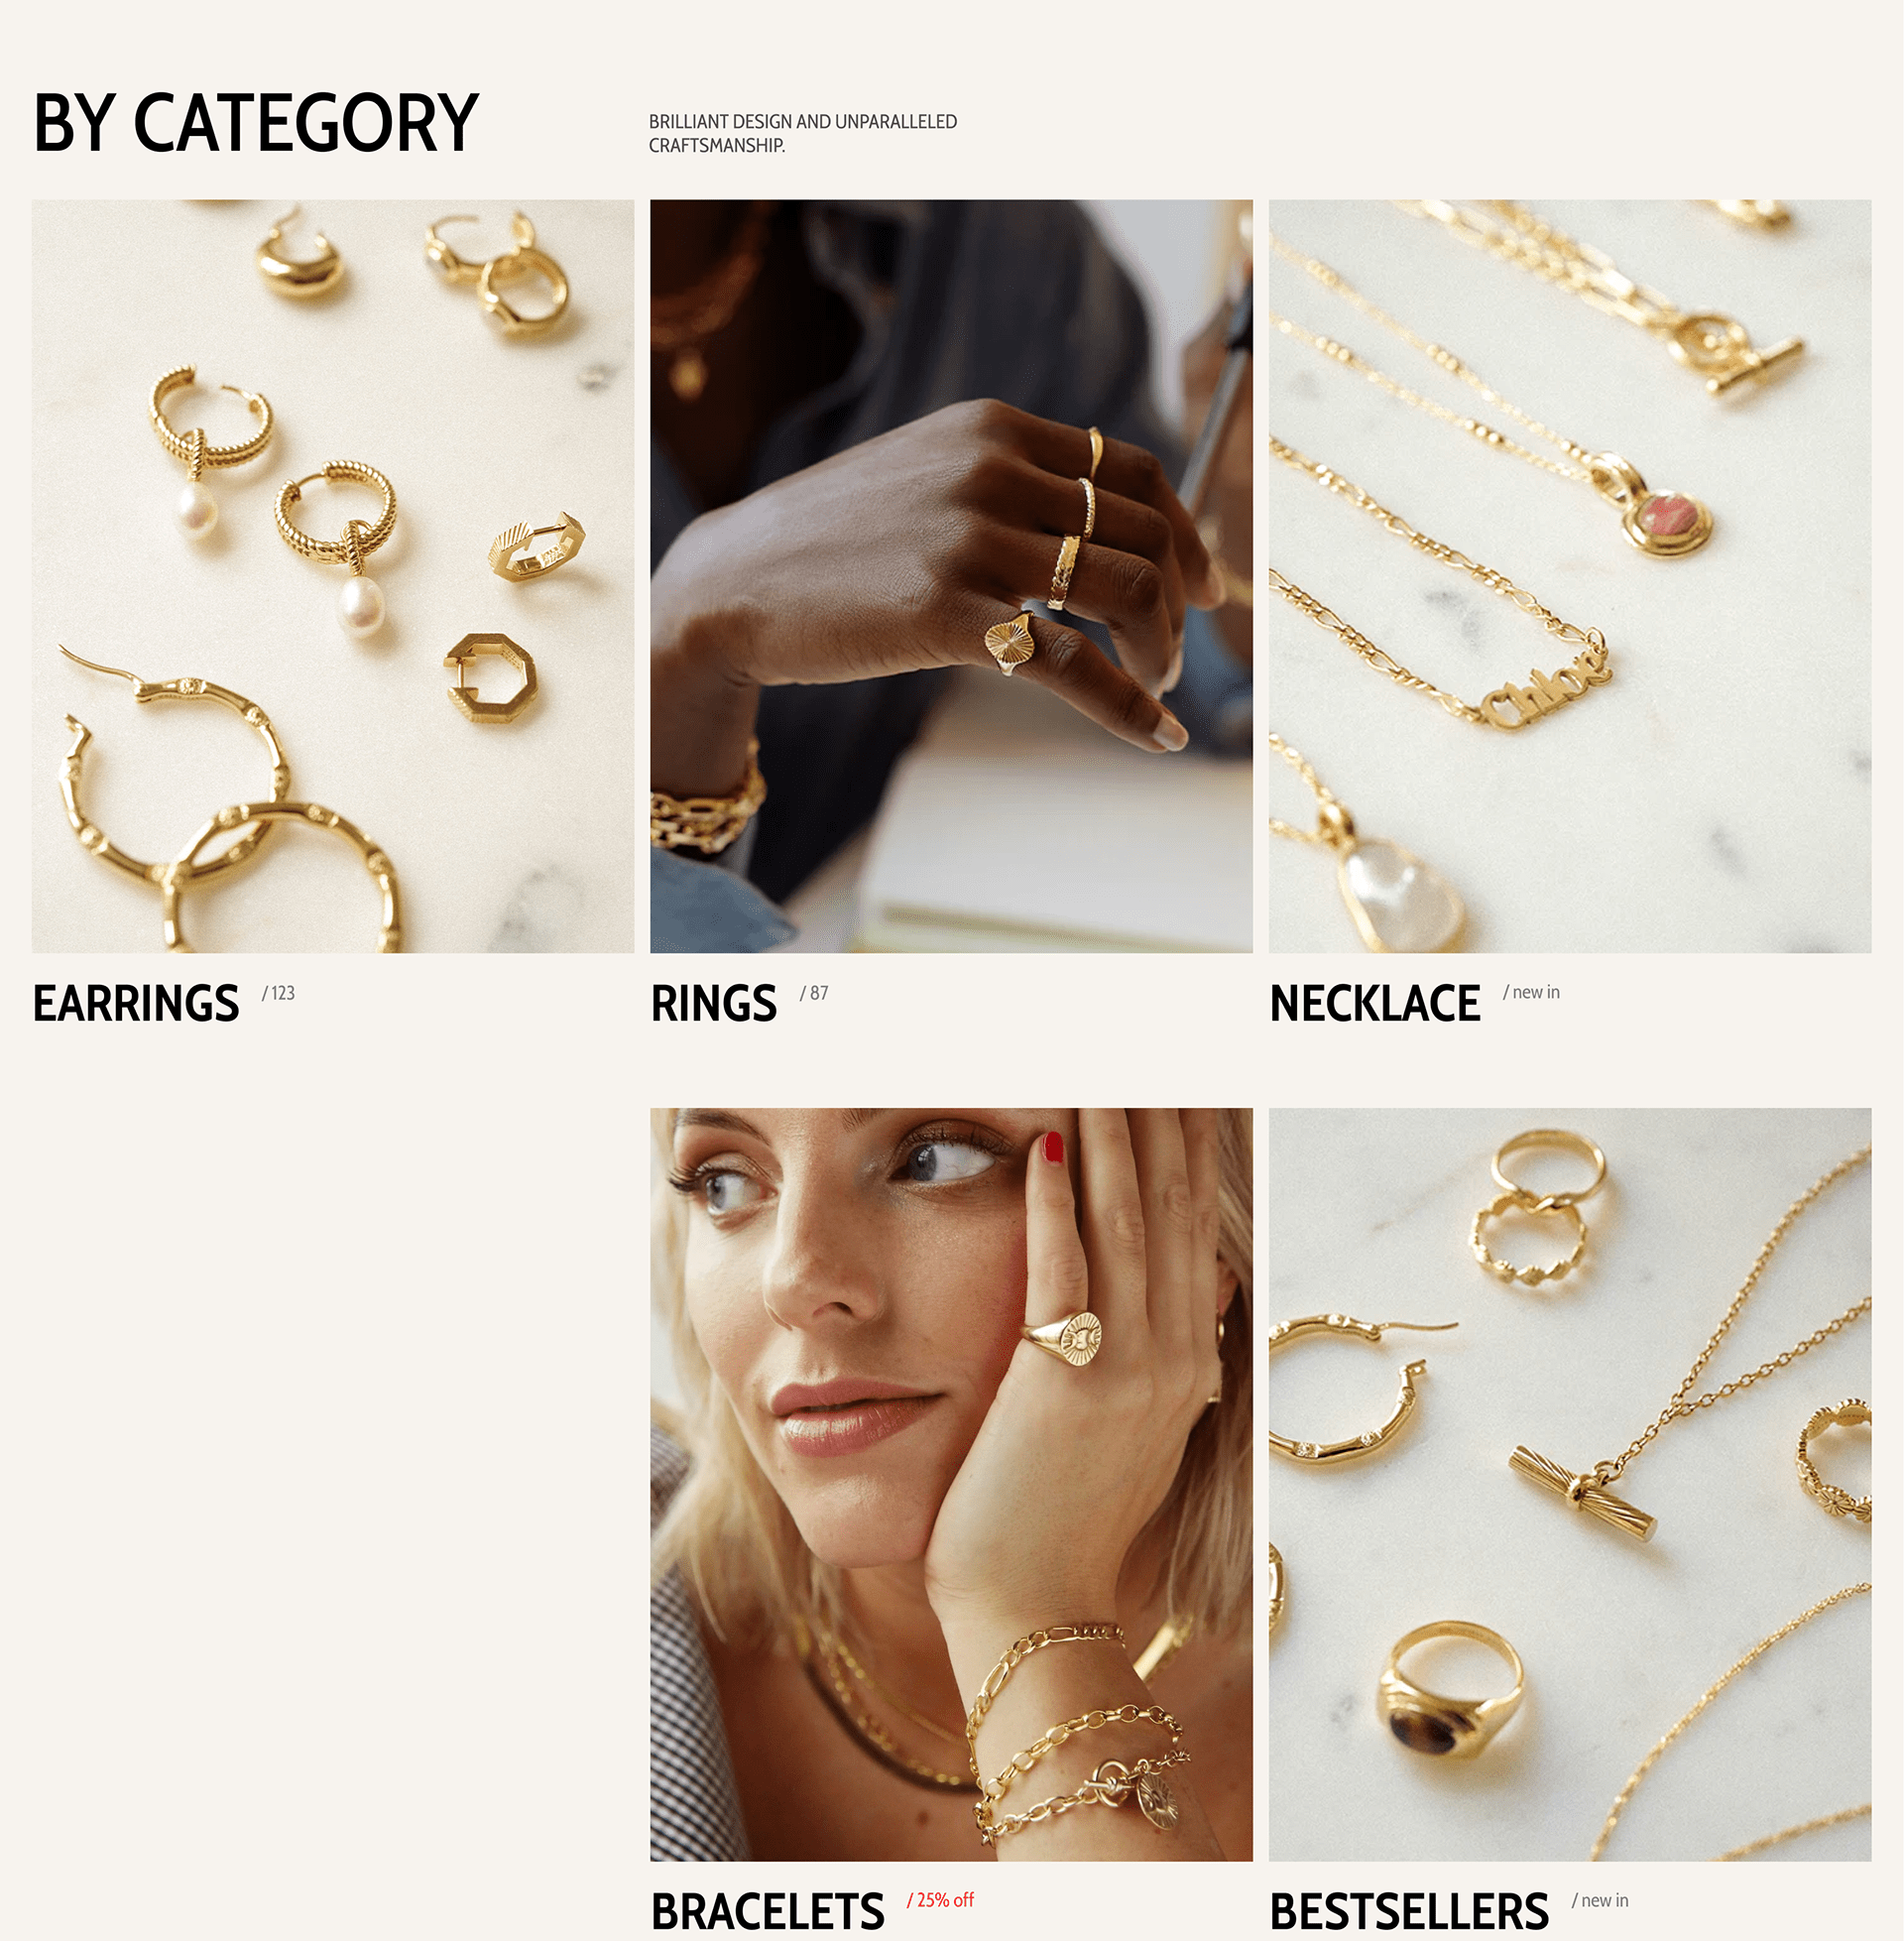 Didosh jewellery | eCommerce Shop on Behance